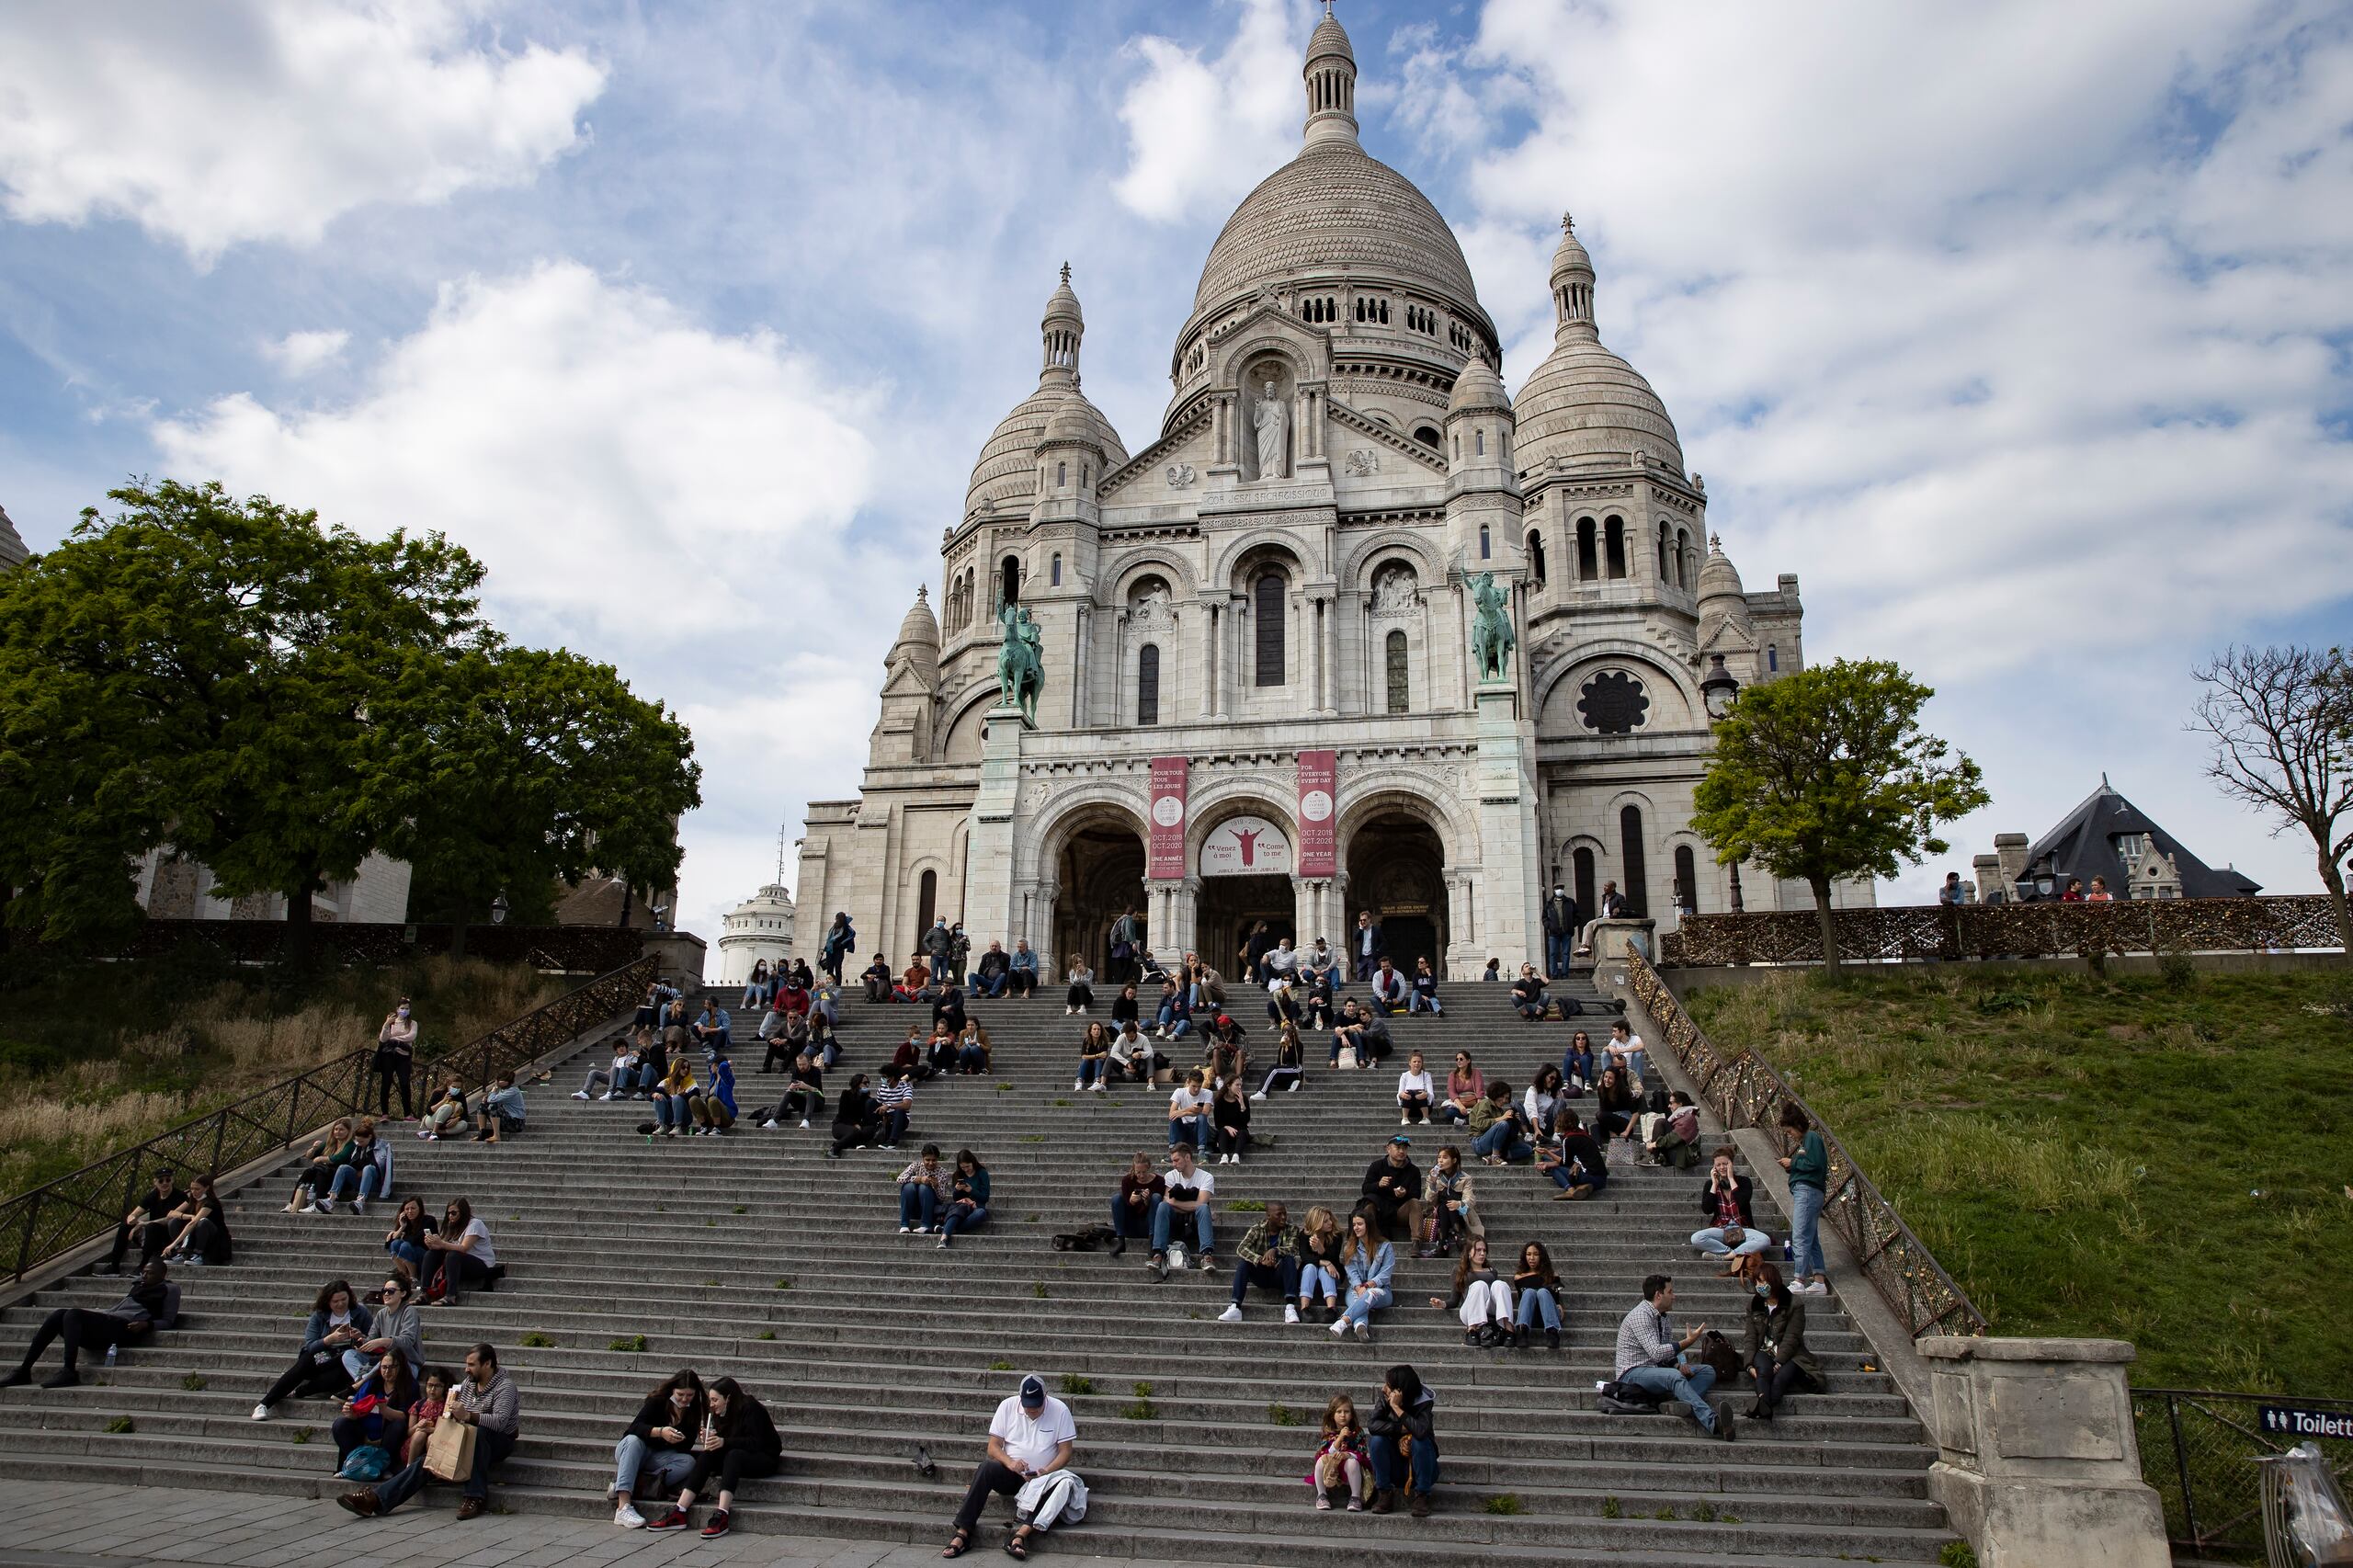 Imagen de Archivo de la Basílica parisina del Sacré-Coeur.
EFE/EPA/IAN LANGSDON
